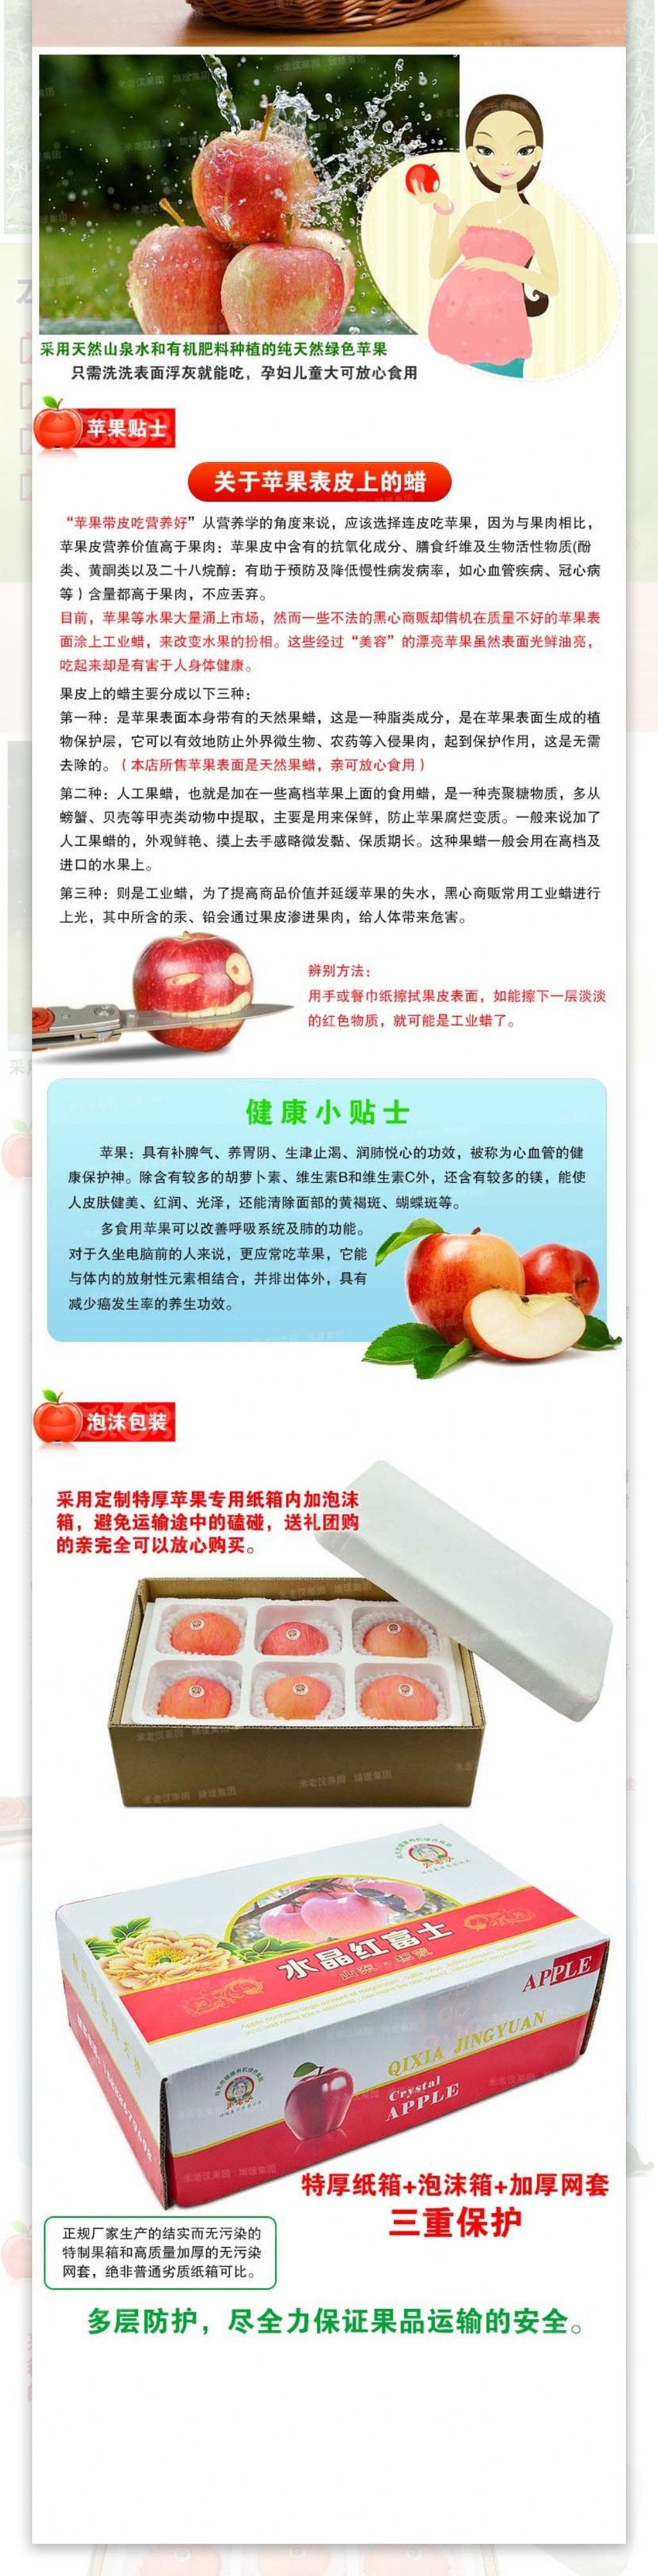 苹果淘宝详情页描述